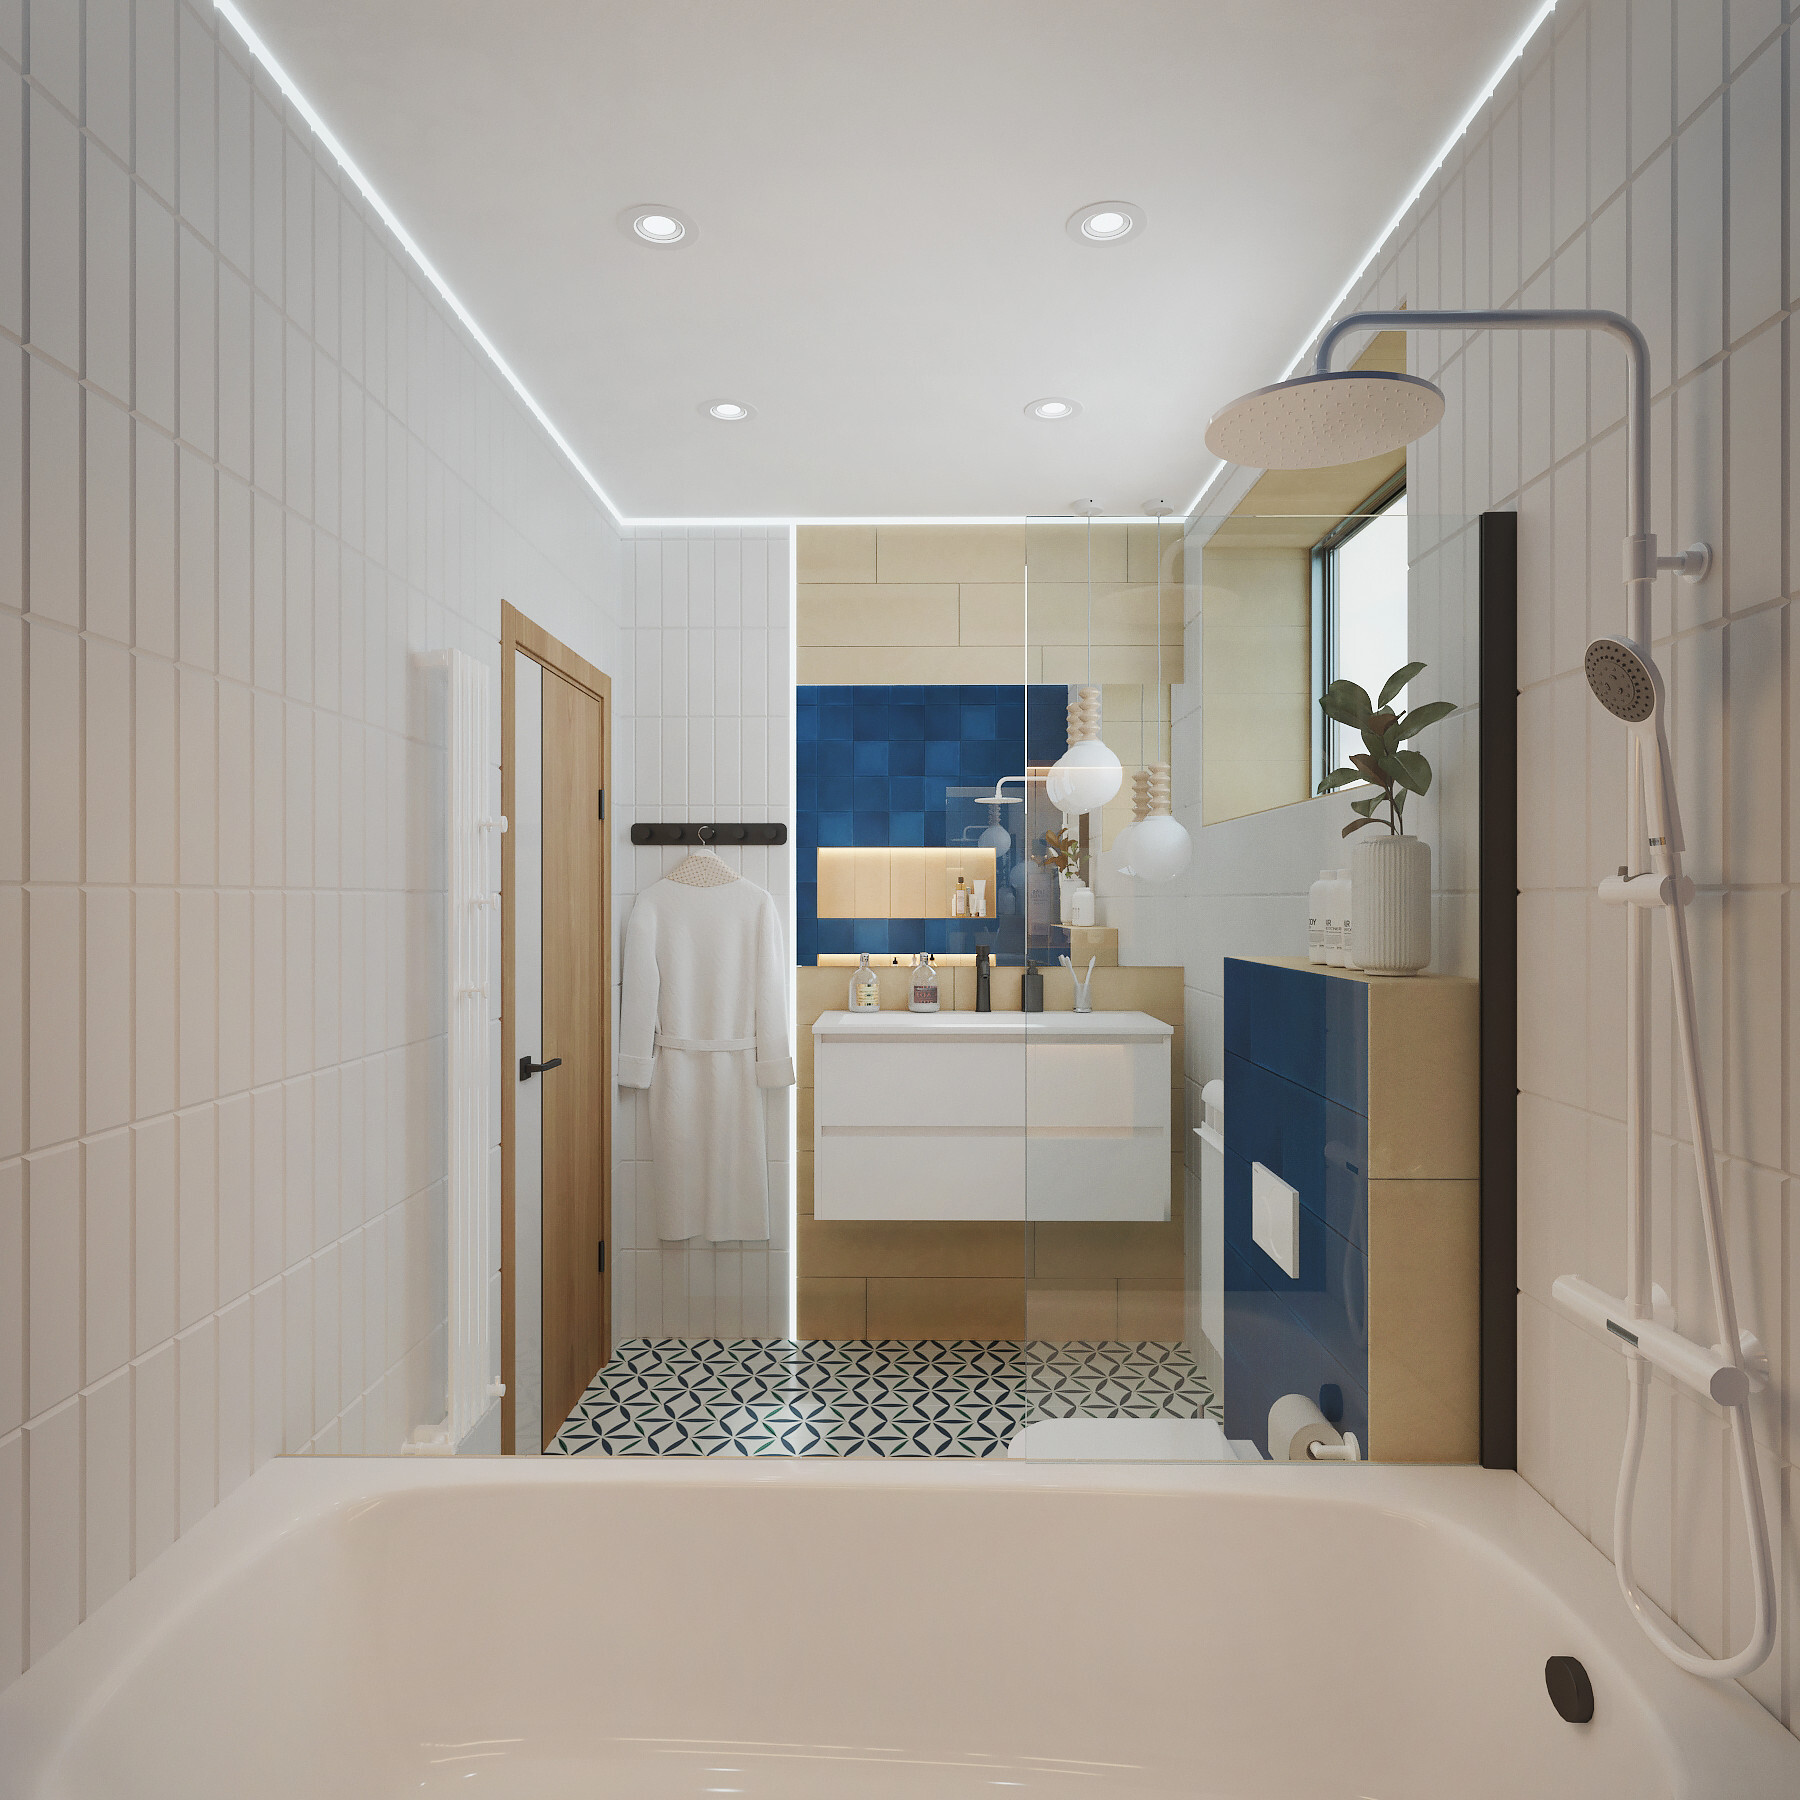 Интерьер ванной cветовыми линиями и подсветкой светодиодной в стиле лофт и скандинавском стиле